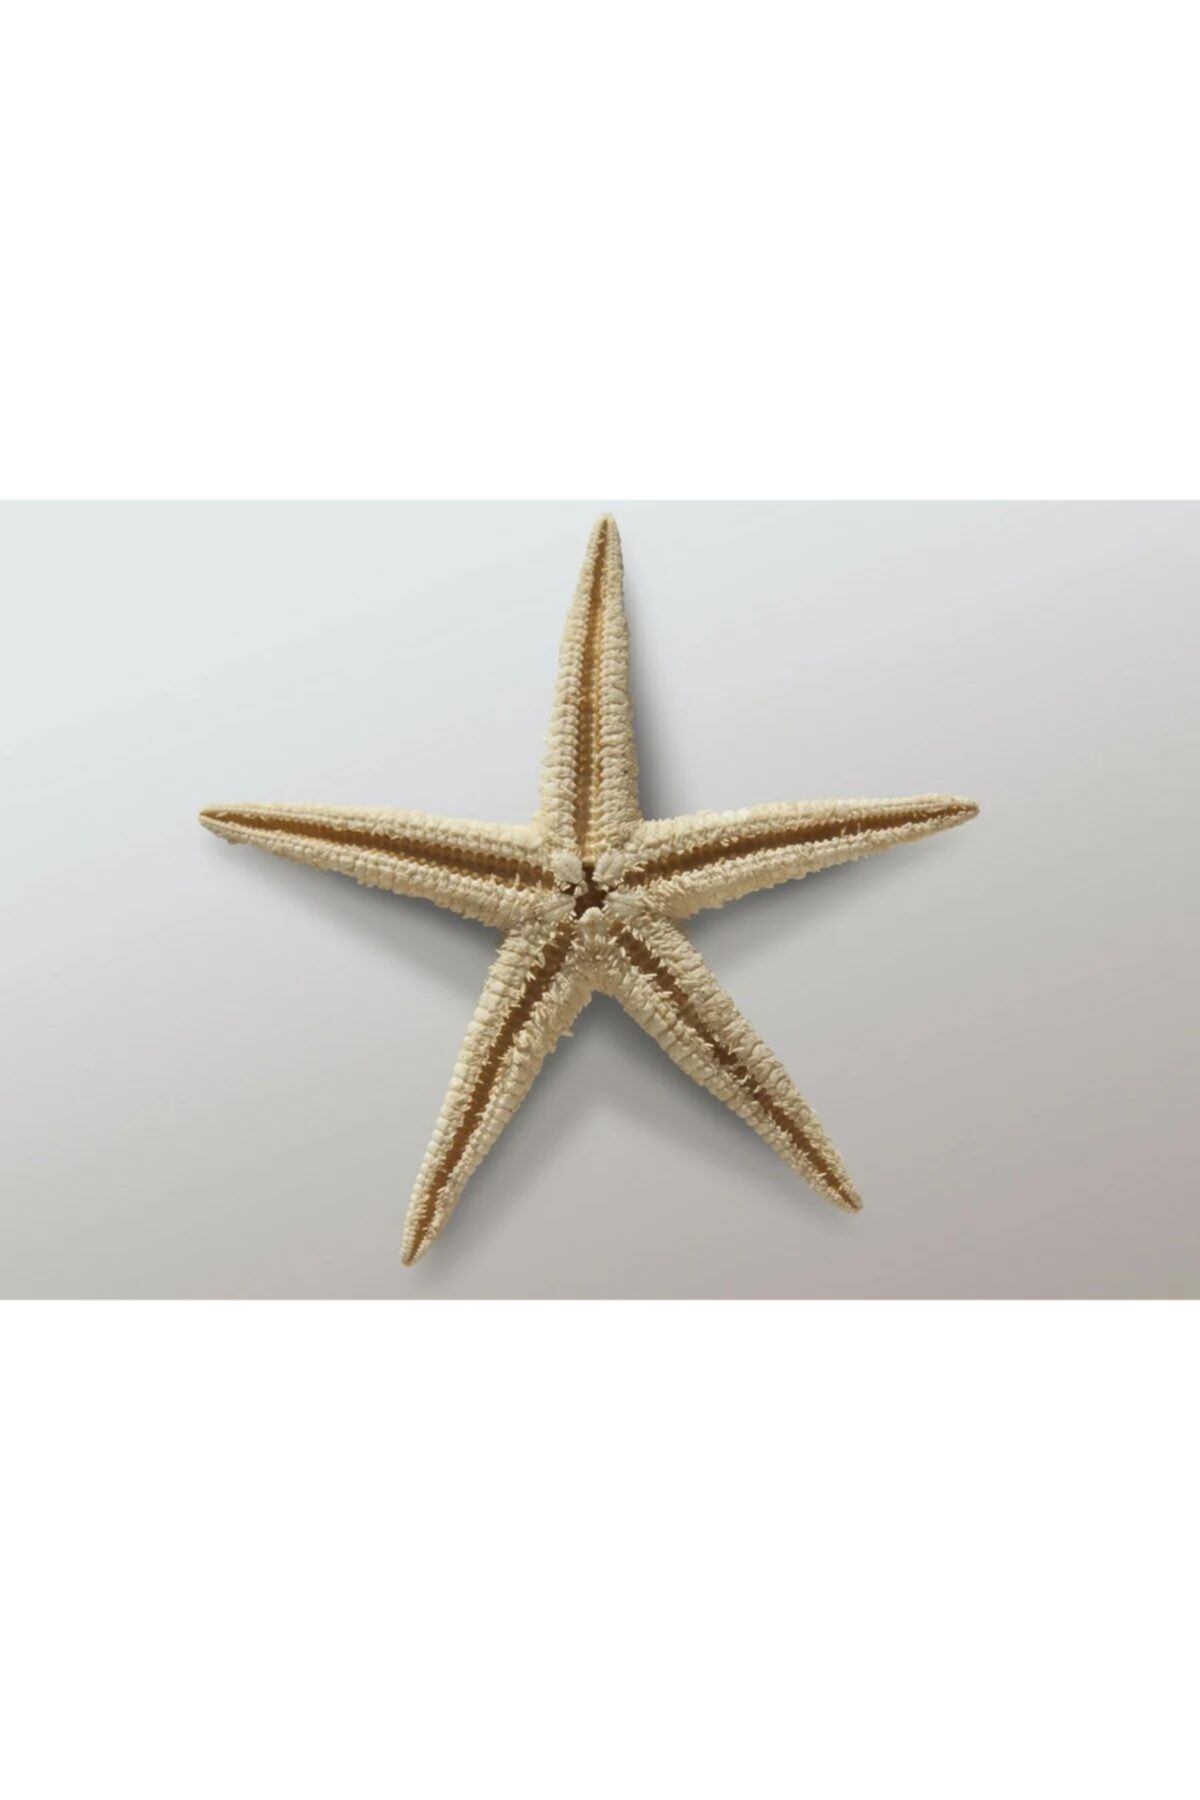 Aker Hediyelik Deniz Yıldızı 15 Adet 7x10cm Süs Deniz Yıldızları Kuru Deniz Ürünleri Denizyıldızı Su Hayat